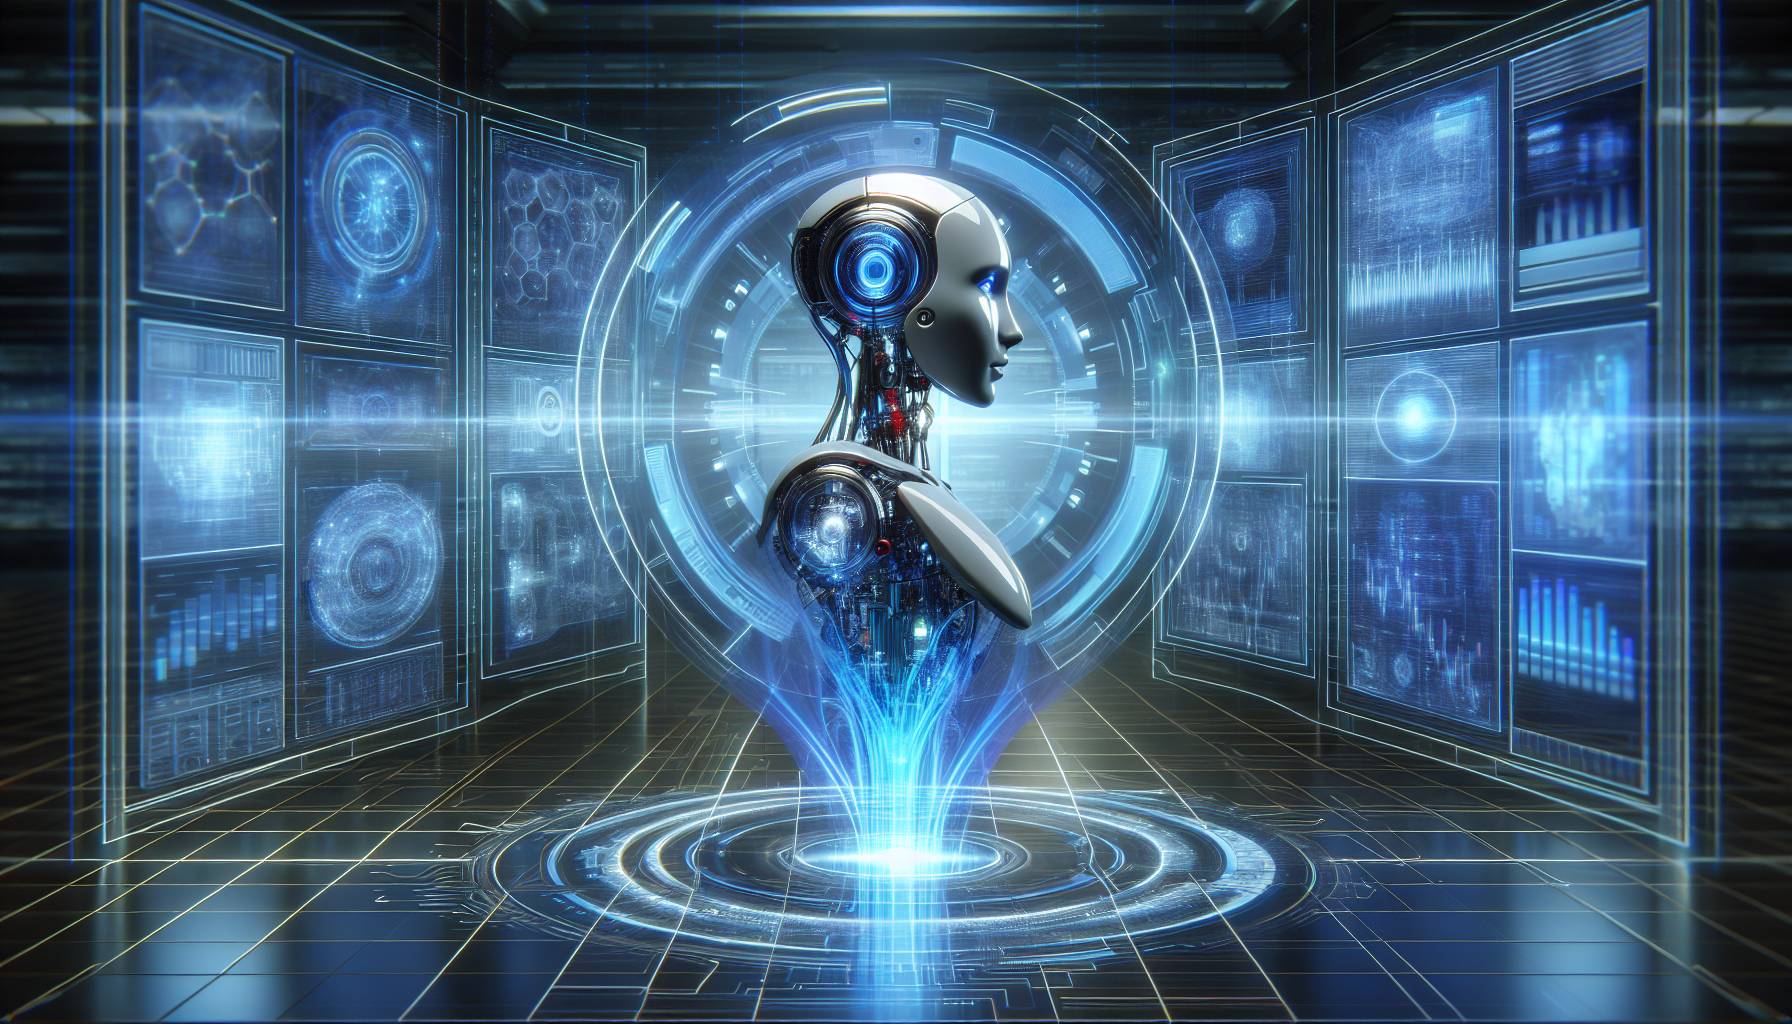 Illustration of a futuristic AI assistant